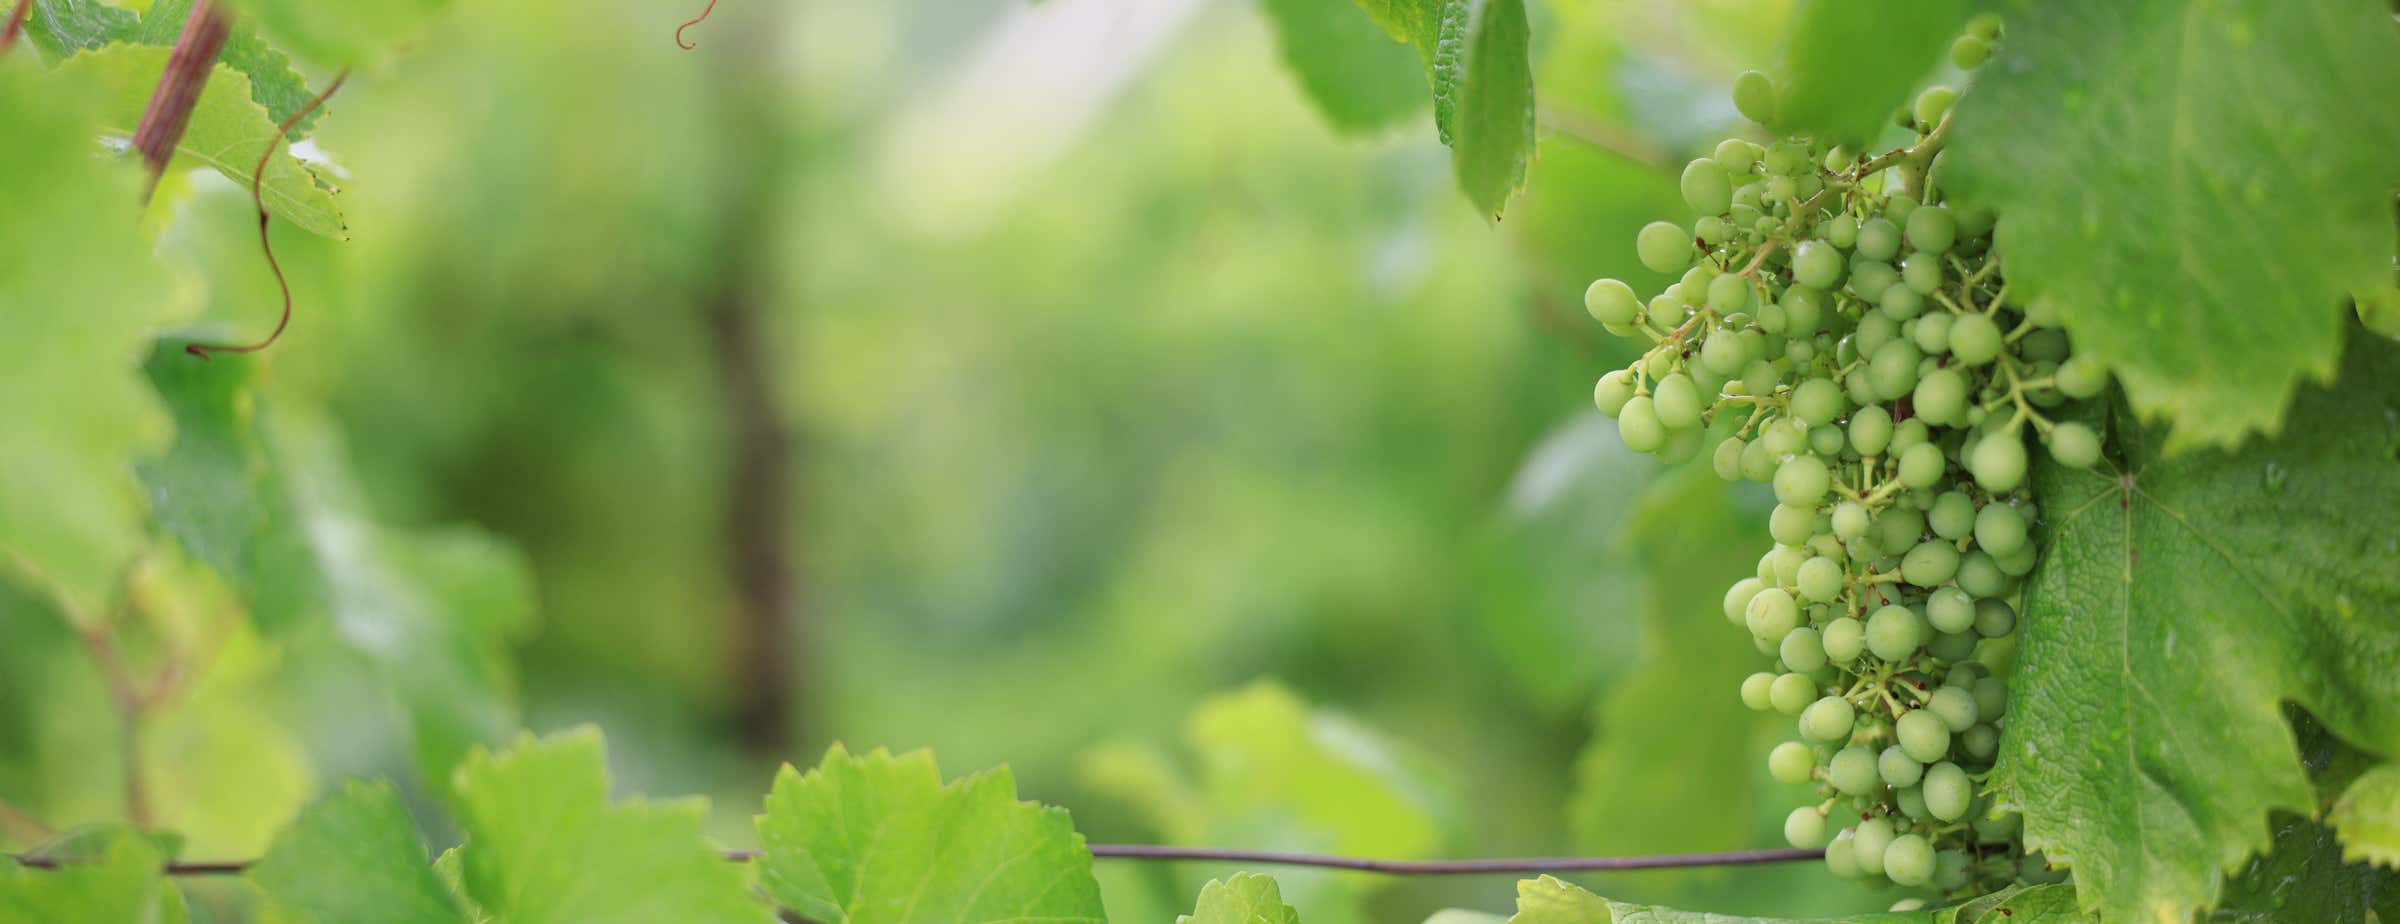 Slika zelenega grozdja, ki visi v vinogradu in je obdano z zelenimi listi.